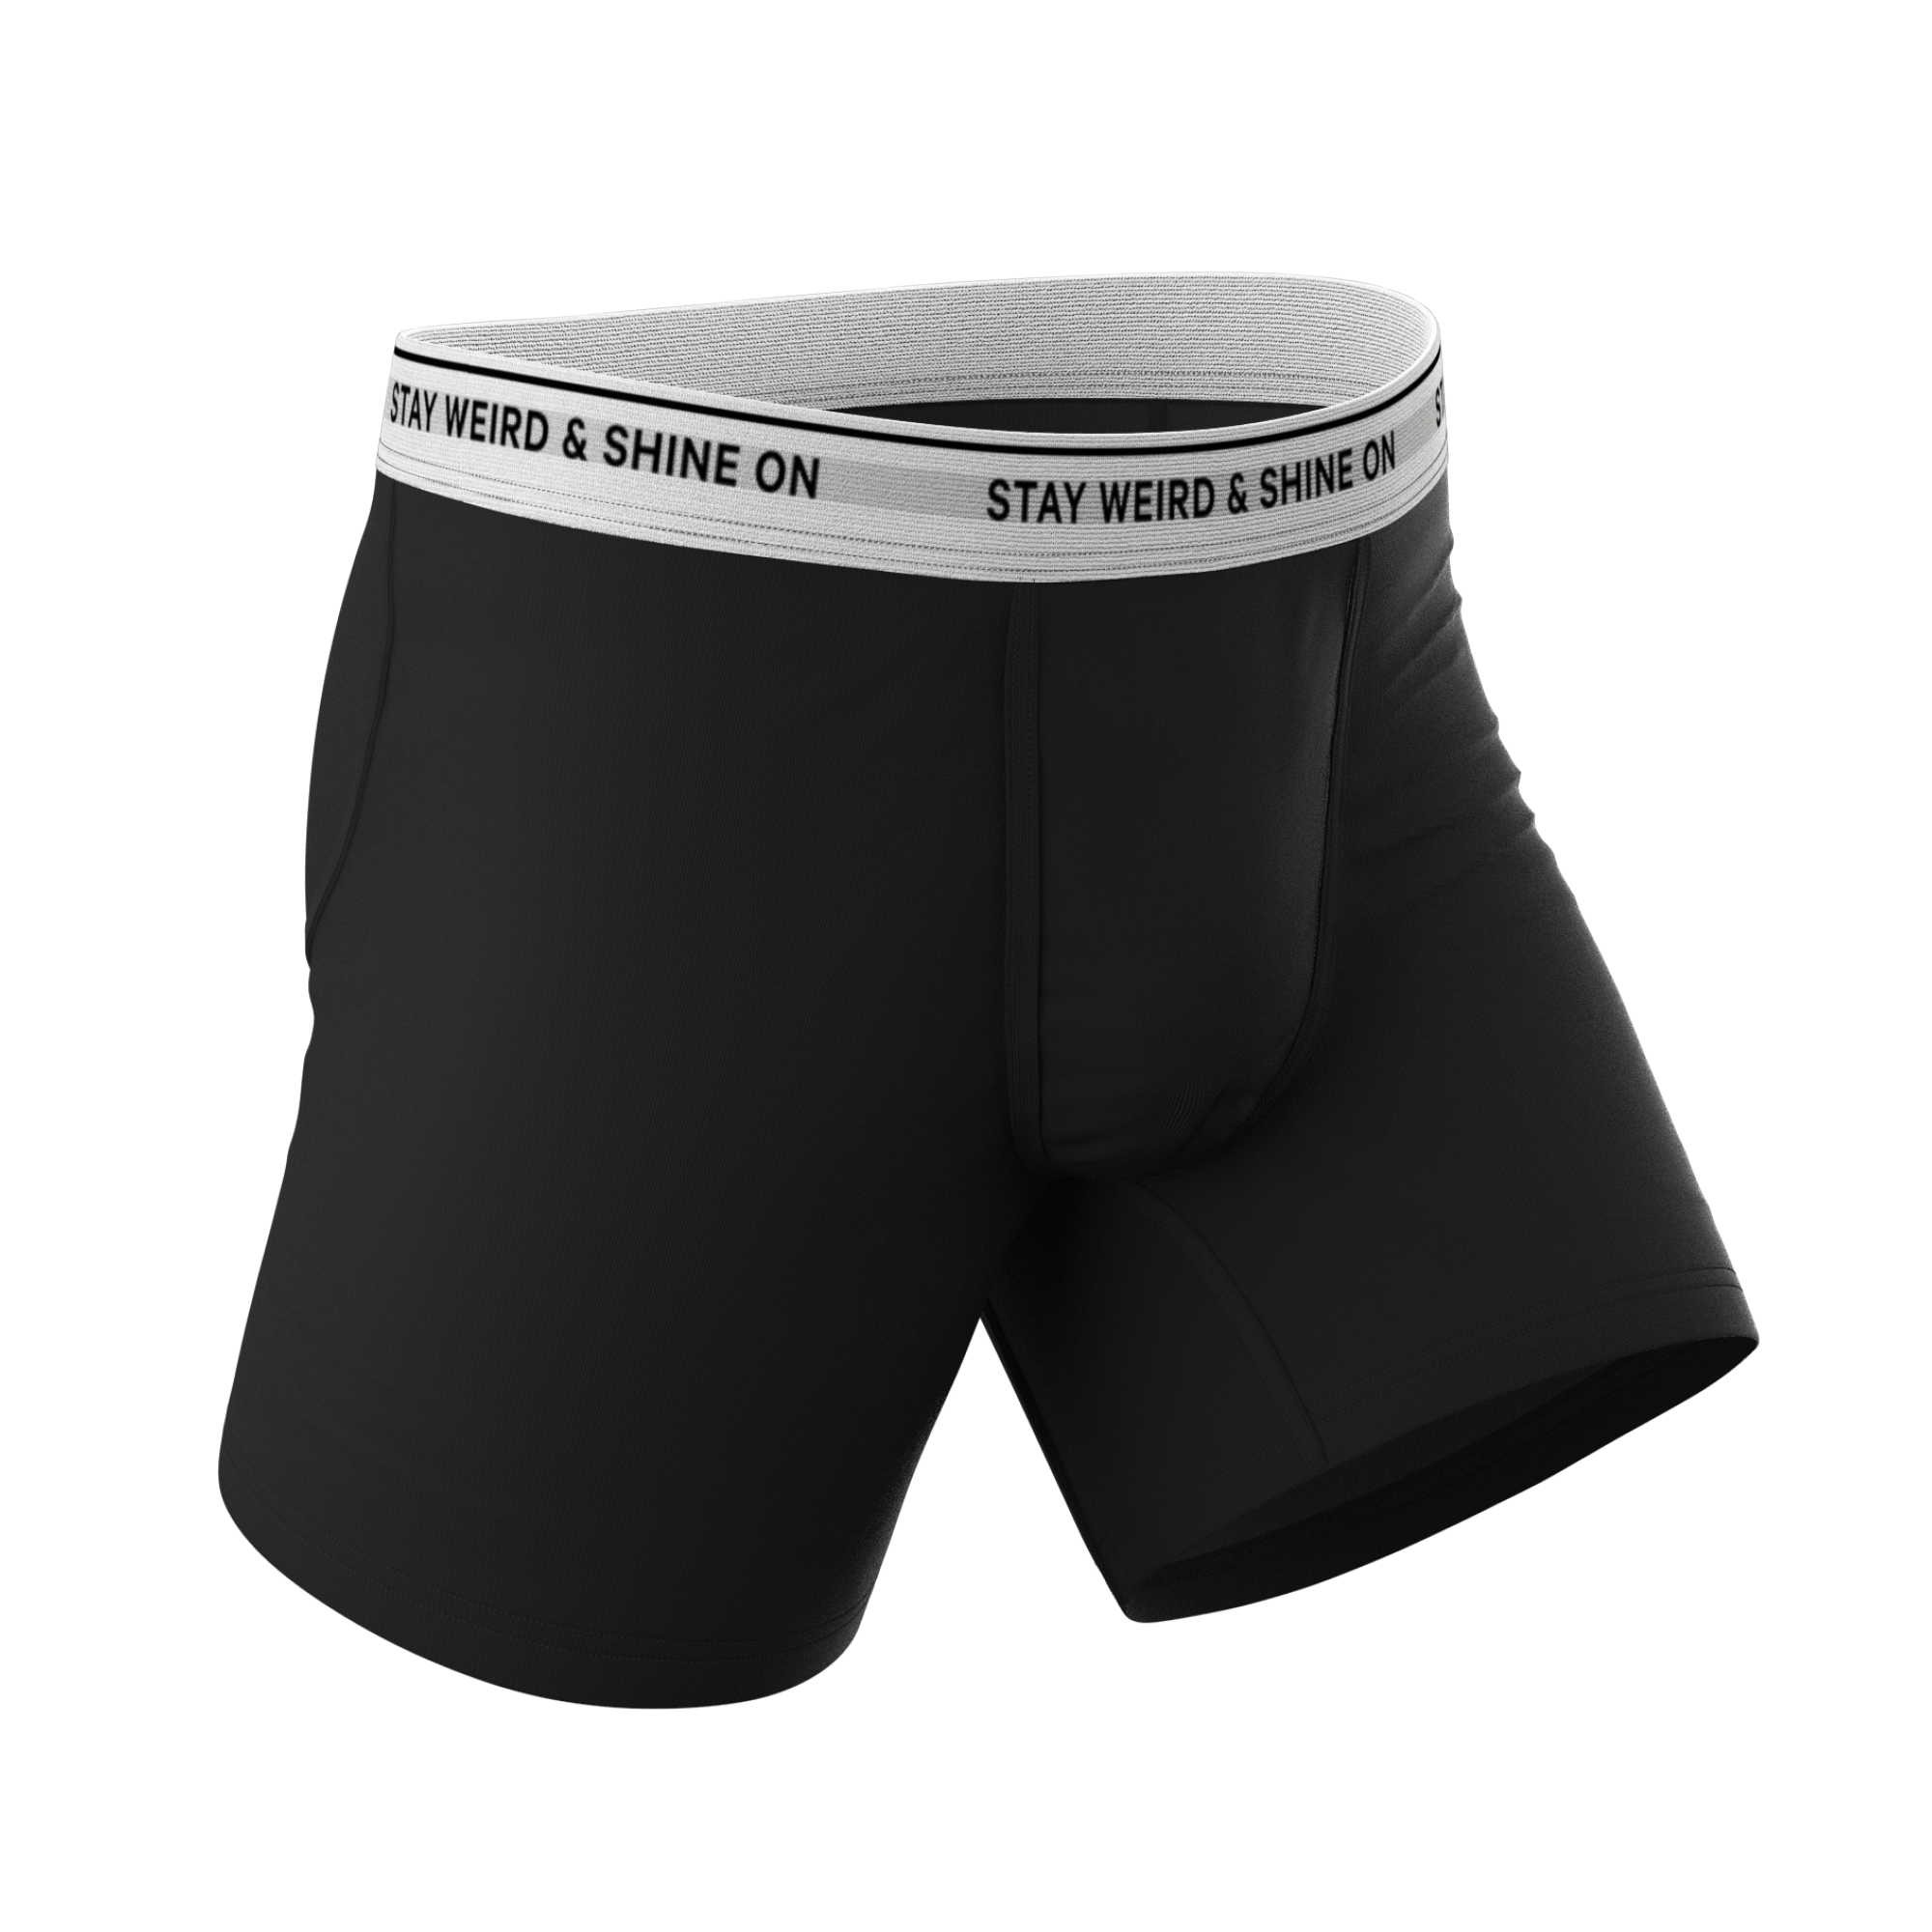 The Threat Level Midnight // Ball Hammock® Pouch Underwear Briefs